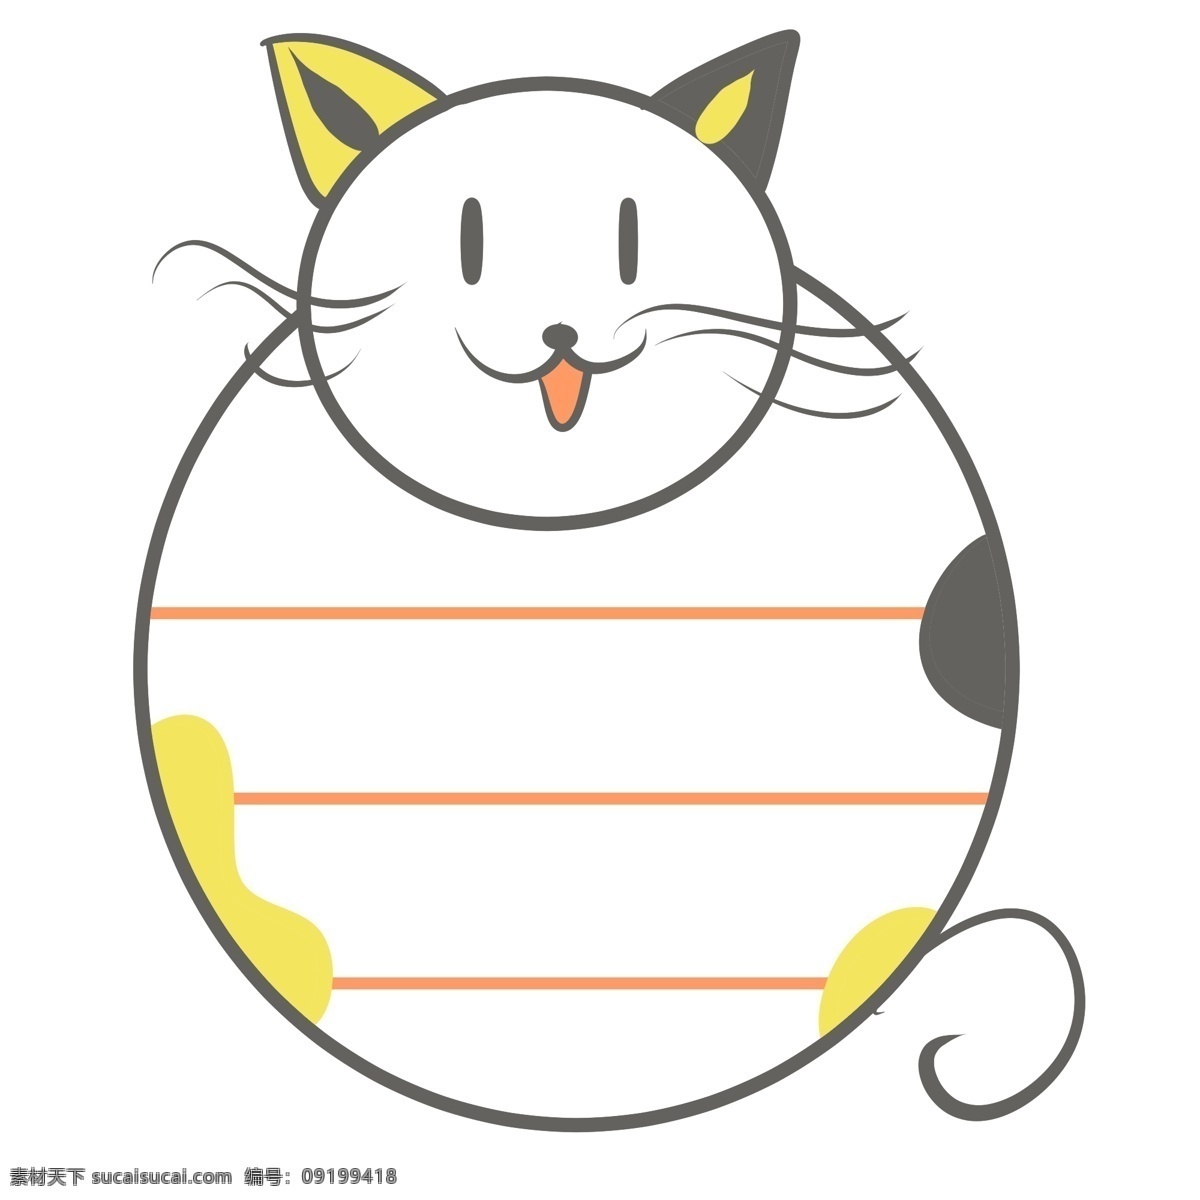 便签 猫咪 卡通 插画 卡通插画 便签插画 纸条插画 备忘录 提示录 猫咪的便签 可爱的猫咪